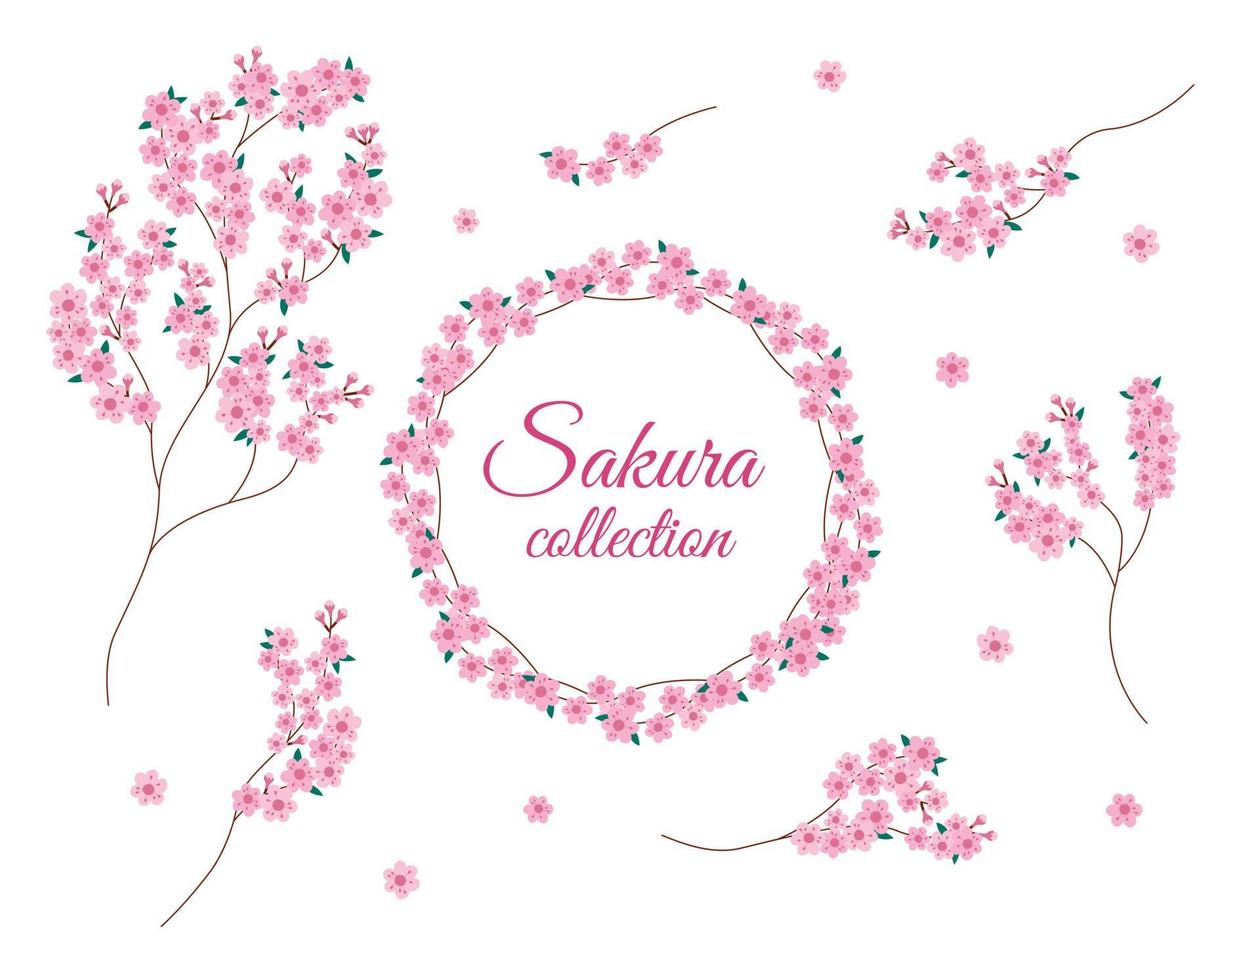 ensemble isolé de branches de fleurs de sakura. collection vectorielle de fleurs de sakura. concevoir des éléments floraux et un cadre rond sur fond blanc vecteur